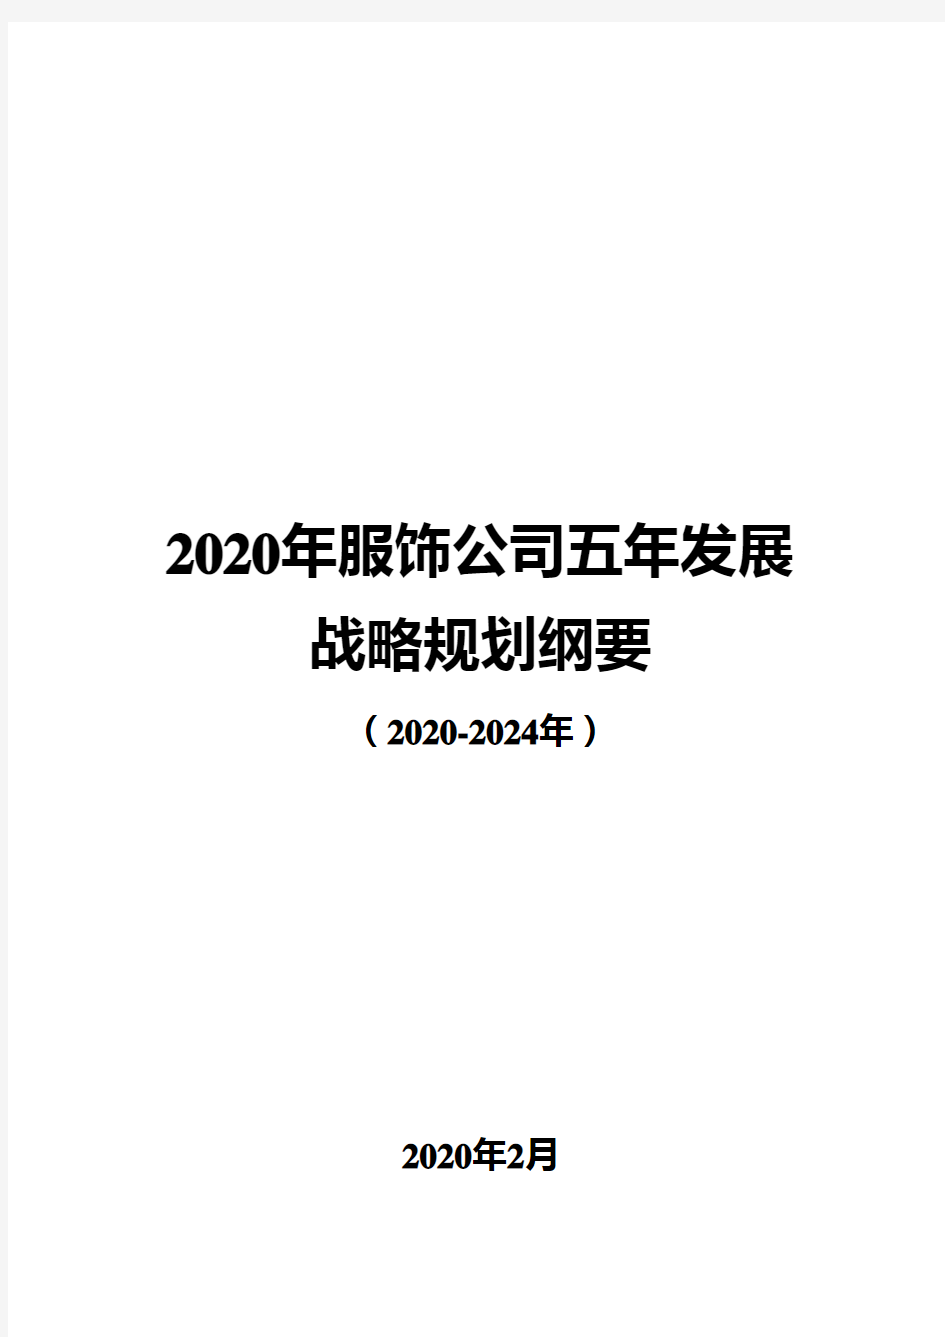 2020年服饰公司五年发展战略规划纲要(2020-2024年)